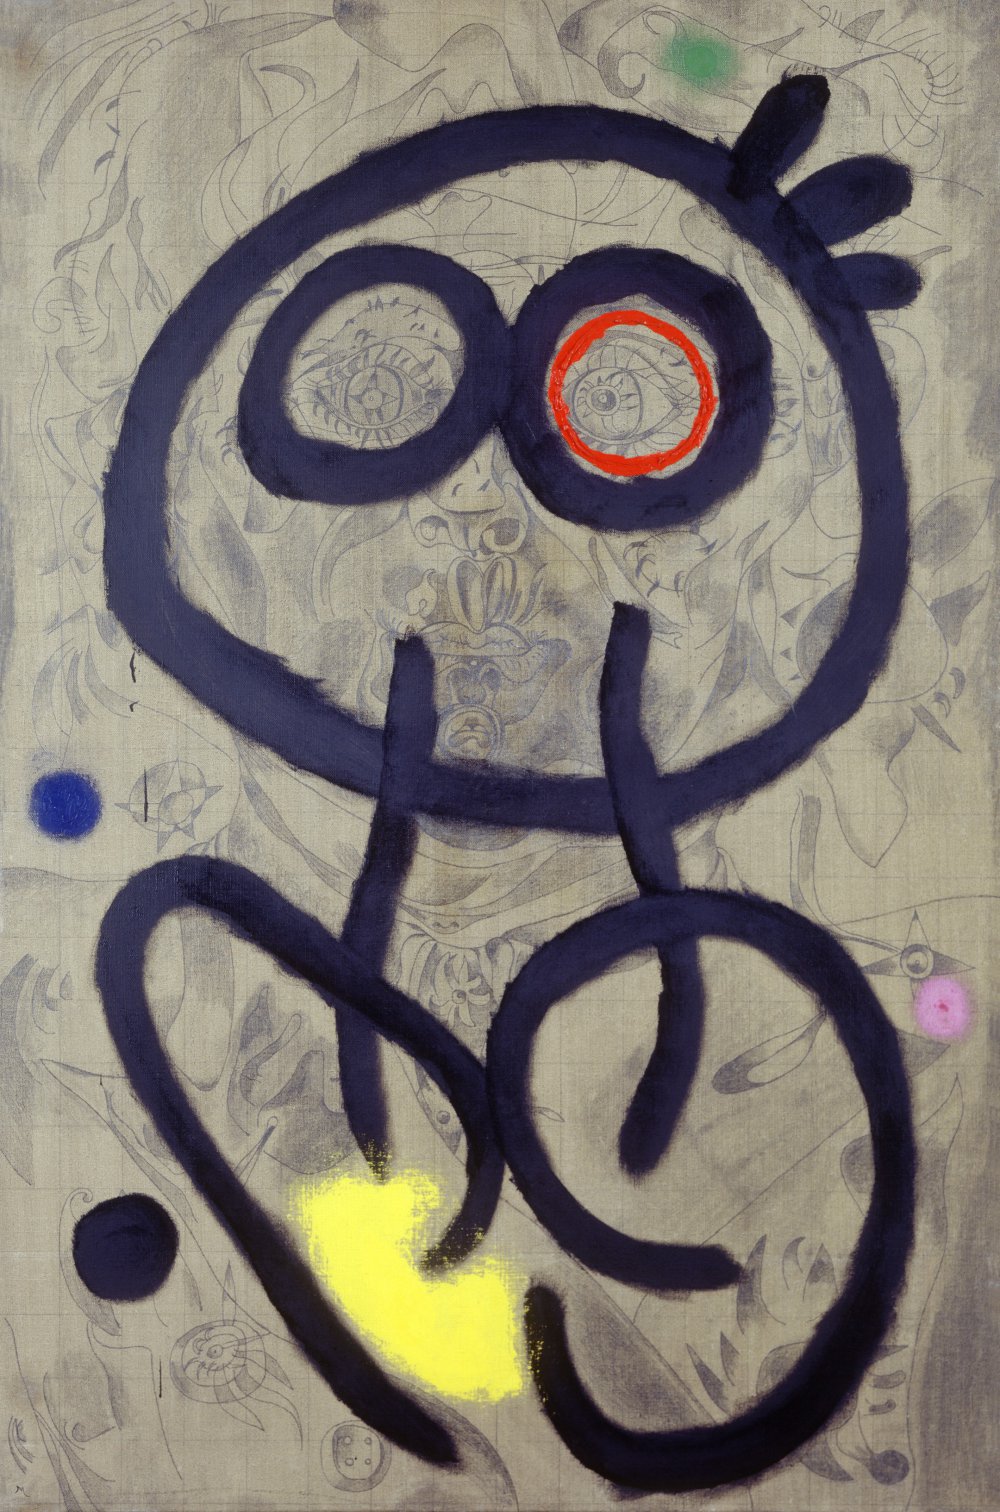 Joan Miró: autorretratos - Apuntes de arte